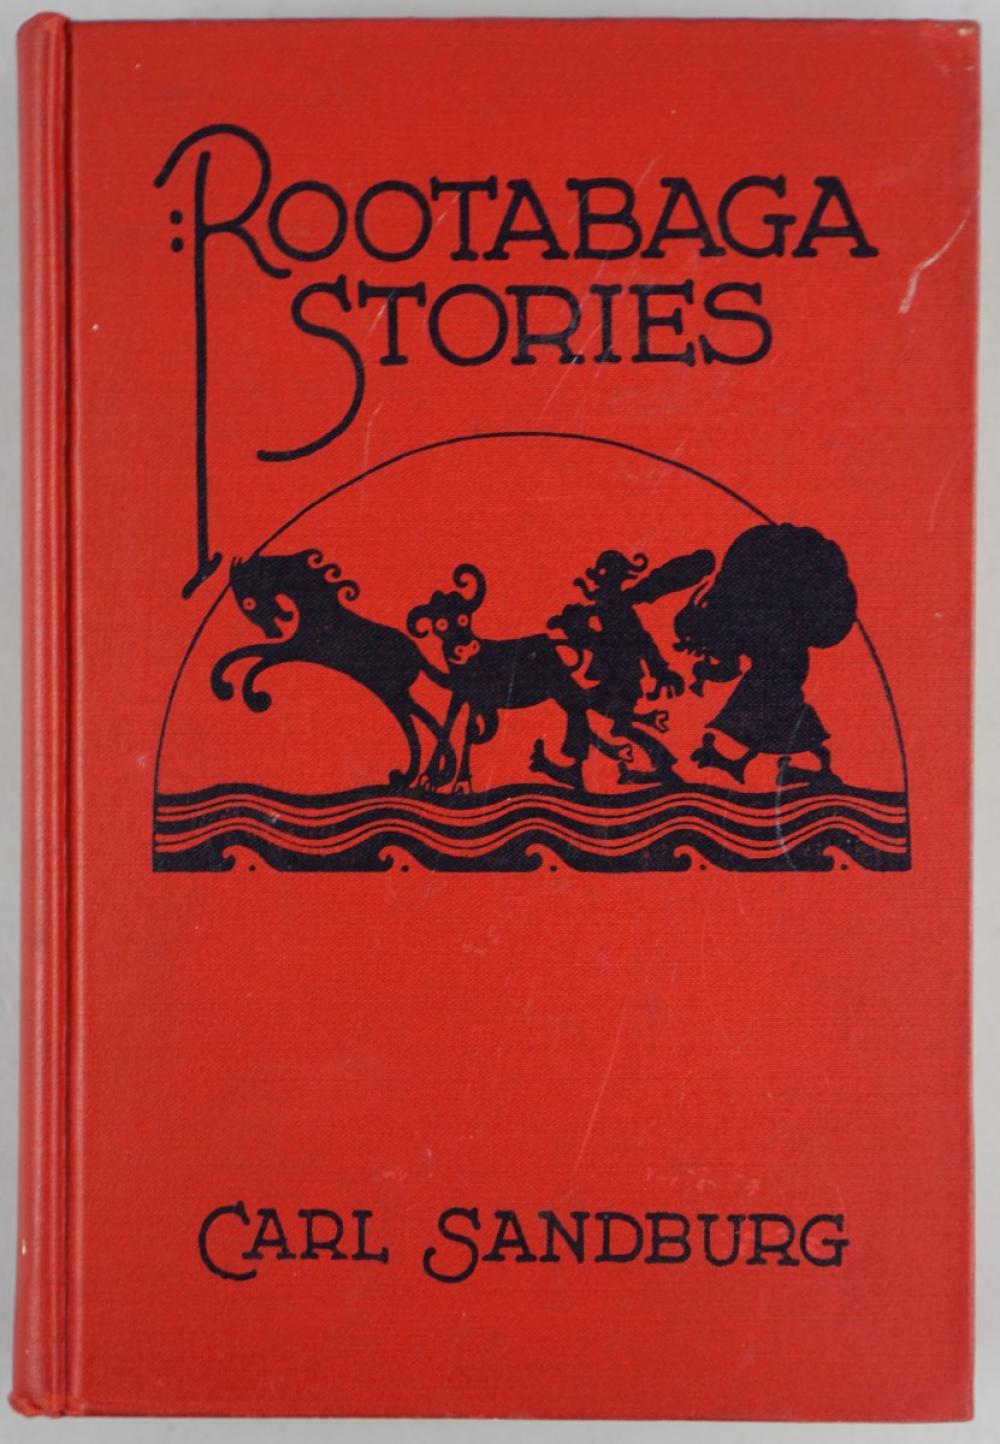 CARL SANDBURG. 'ROOTABAGA STORIES'CARL